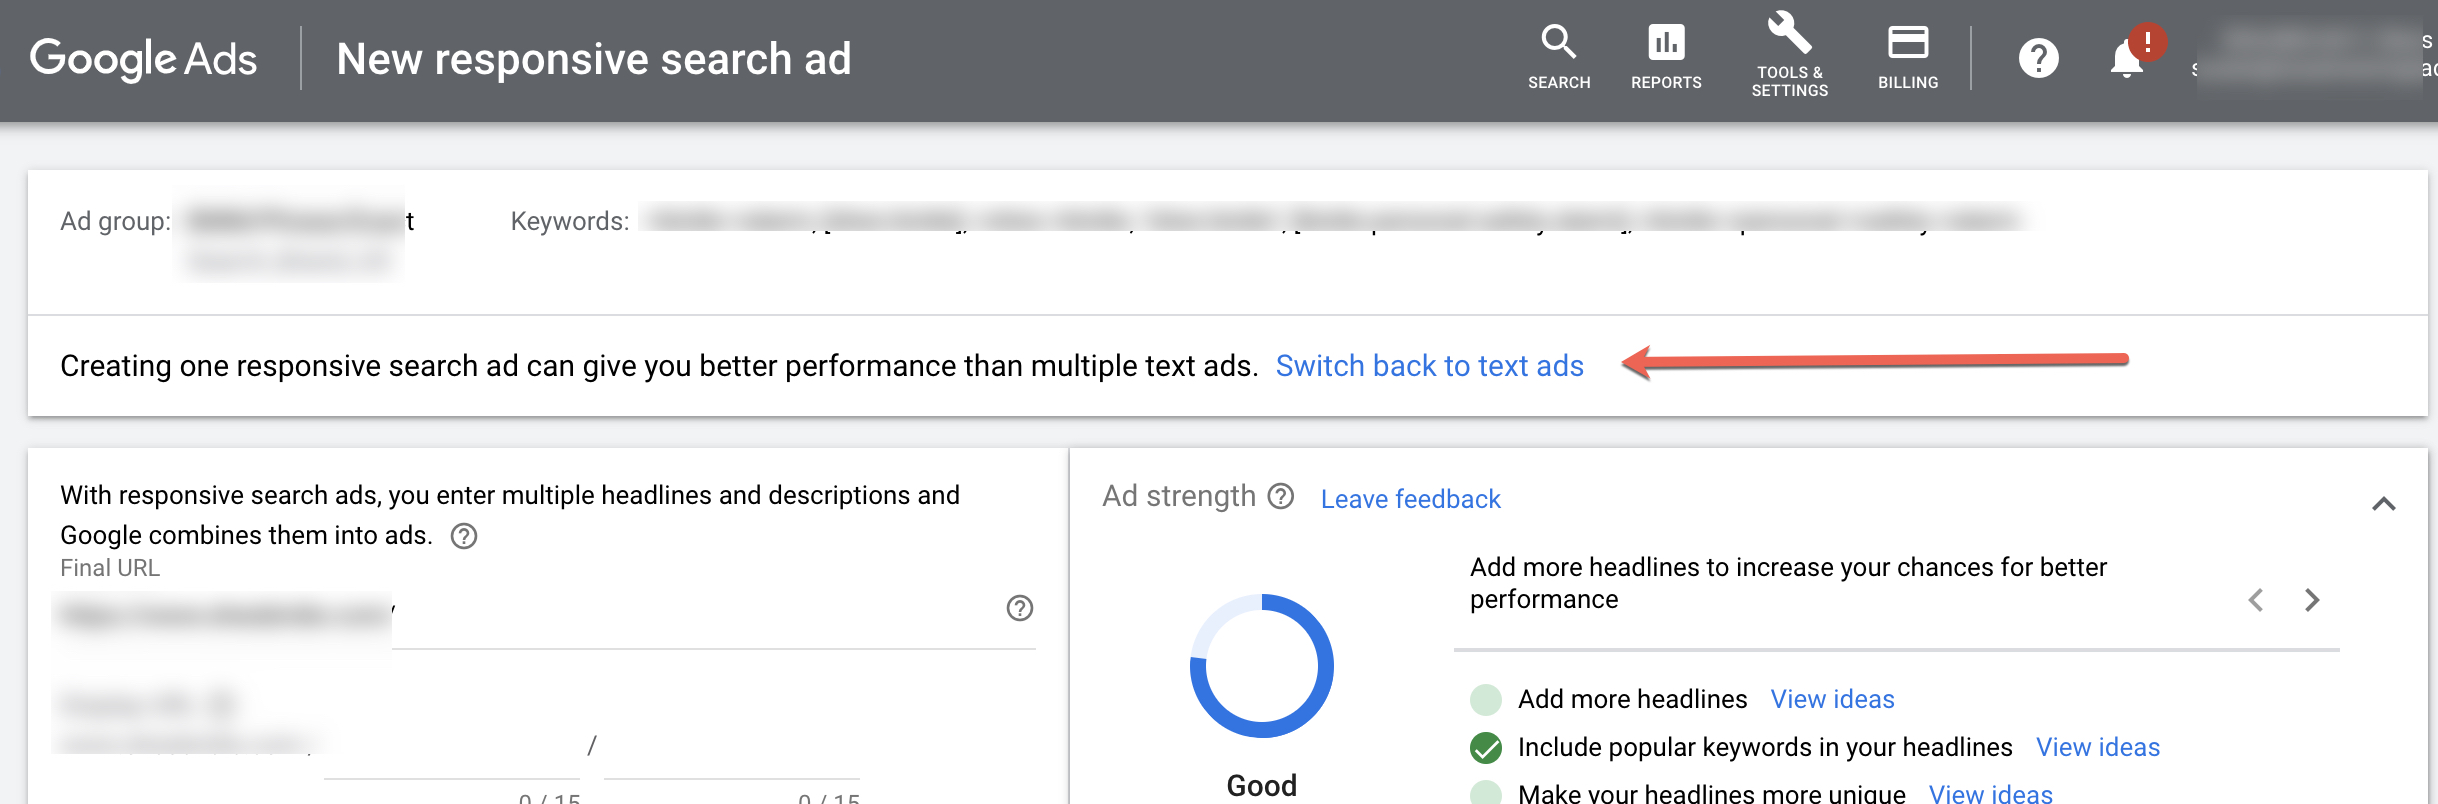 Los anuncios de búsqueda responsivos ahora son los tipos predeterminados para Google Ads